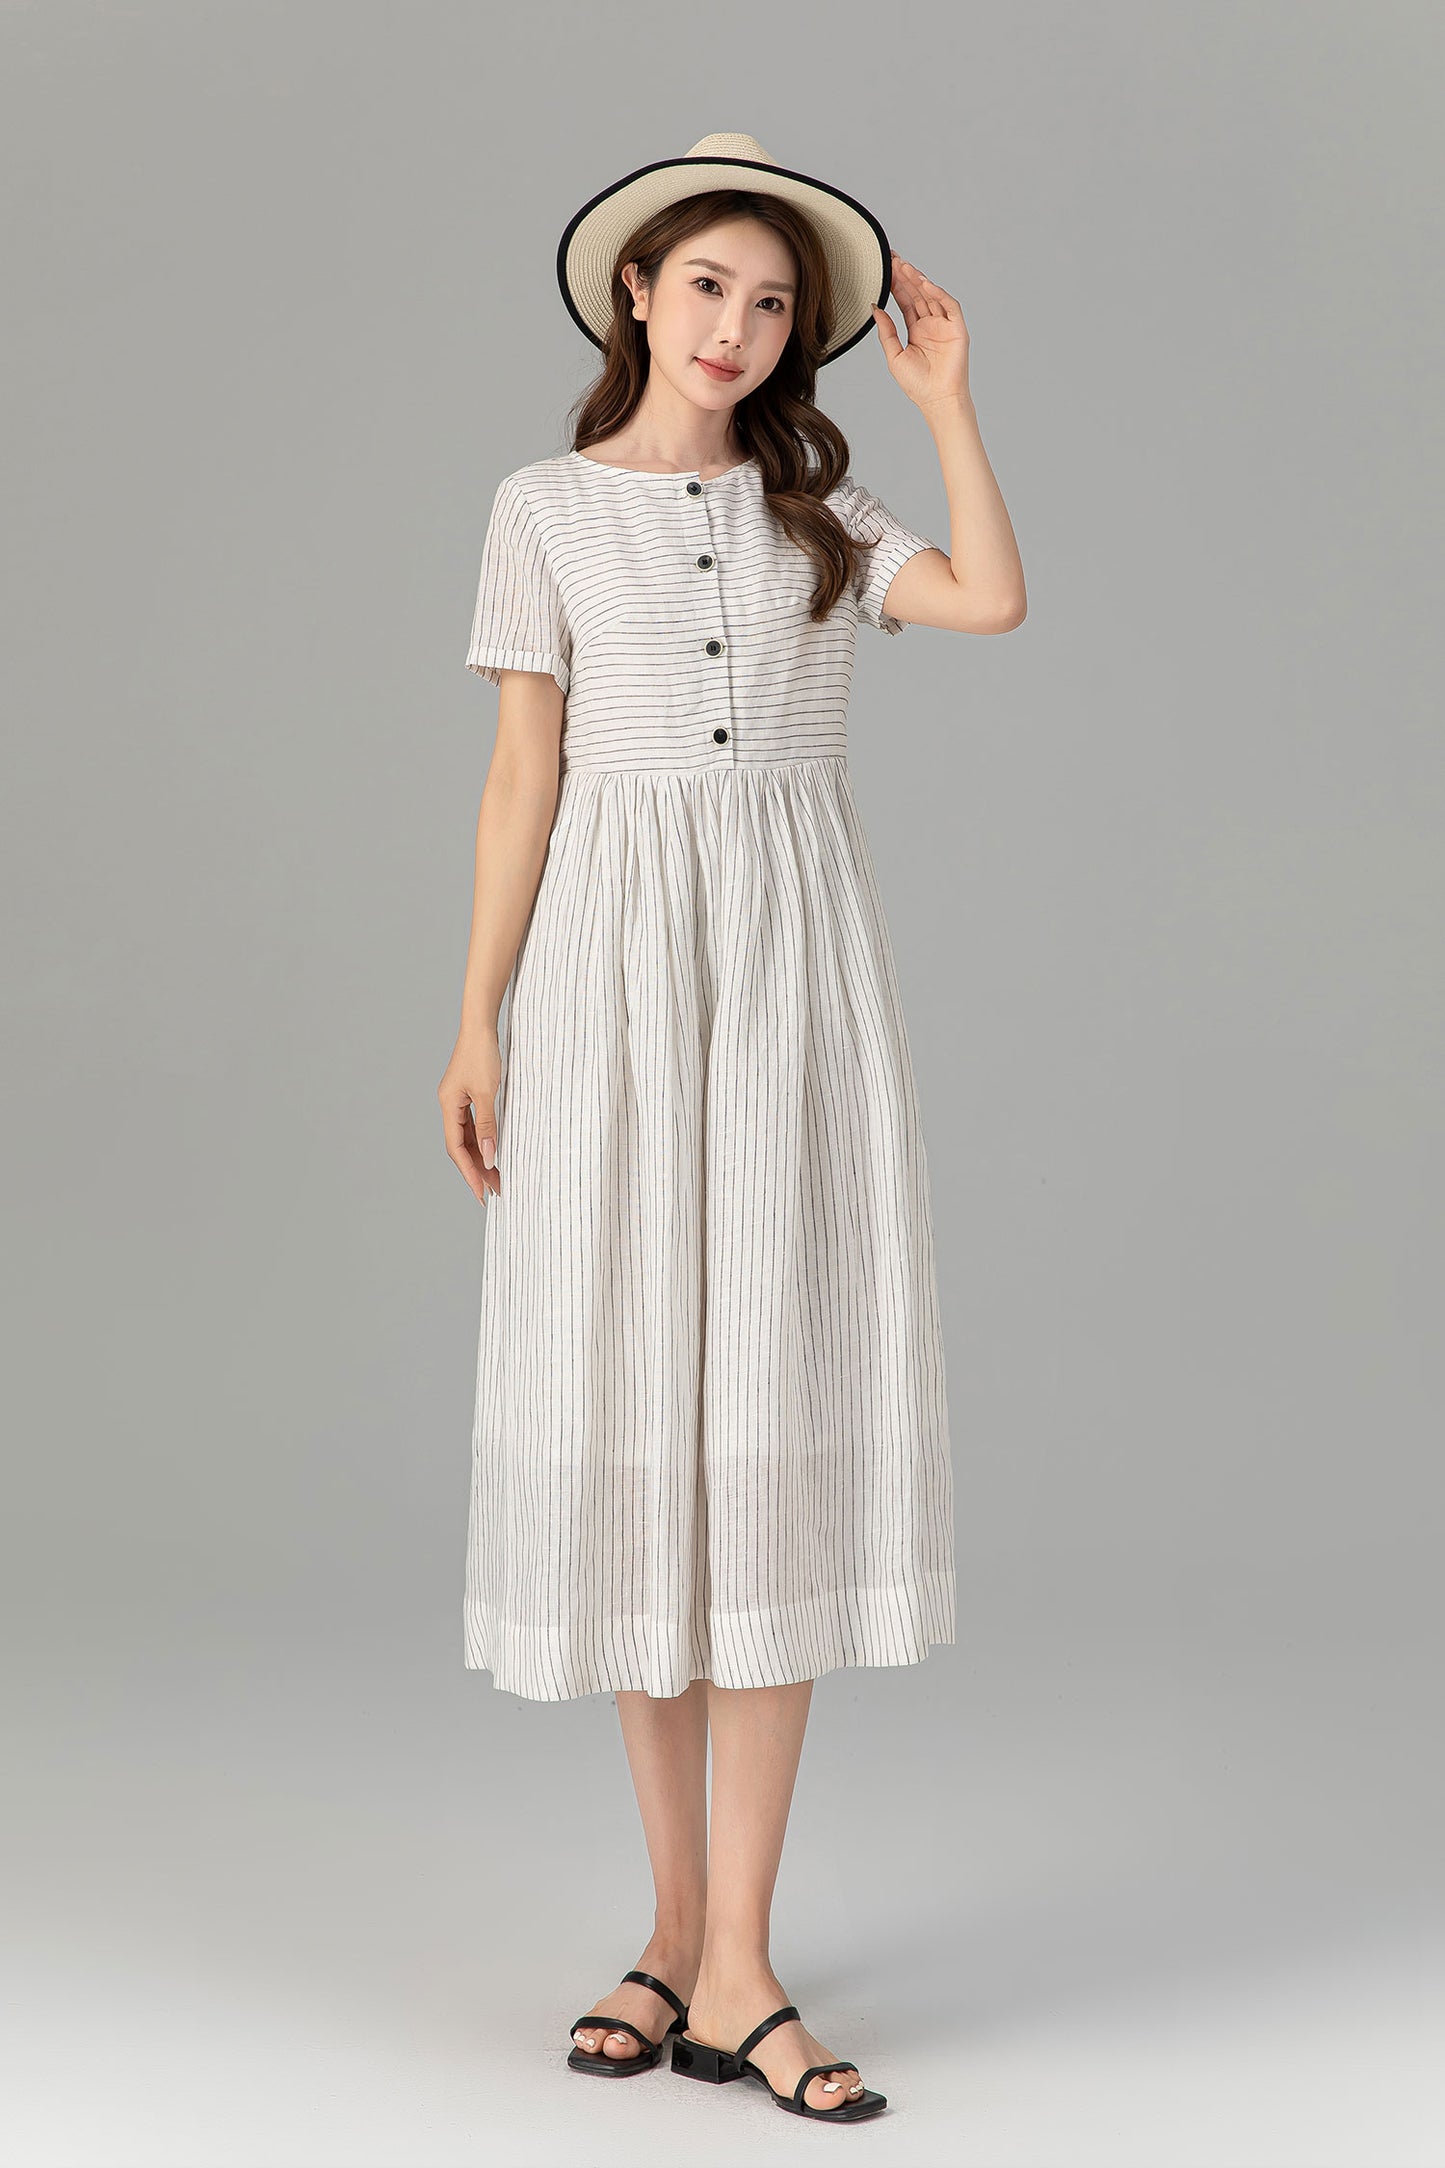 black and white striple summer linen dress 4926